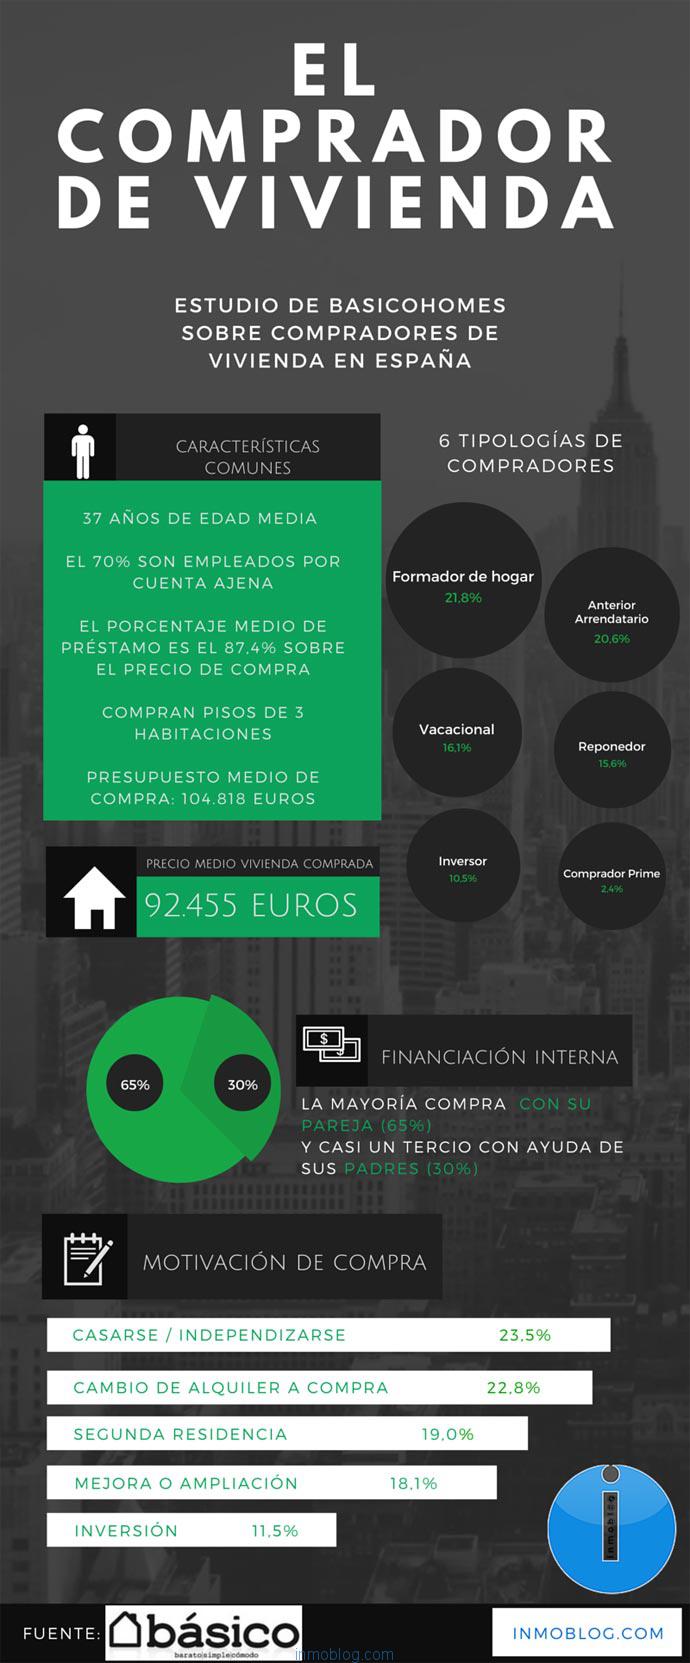 Comprador-vivienda-espana-basico-inmoblog